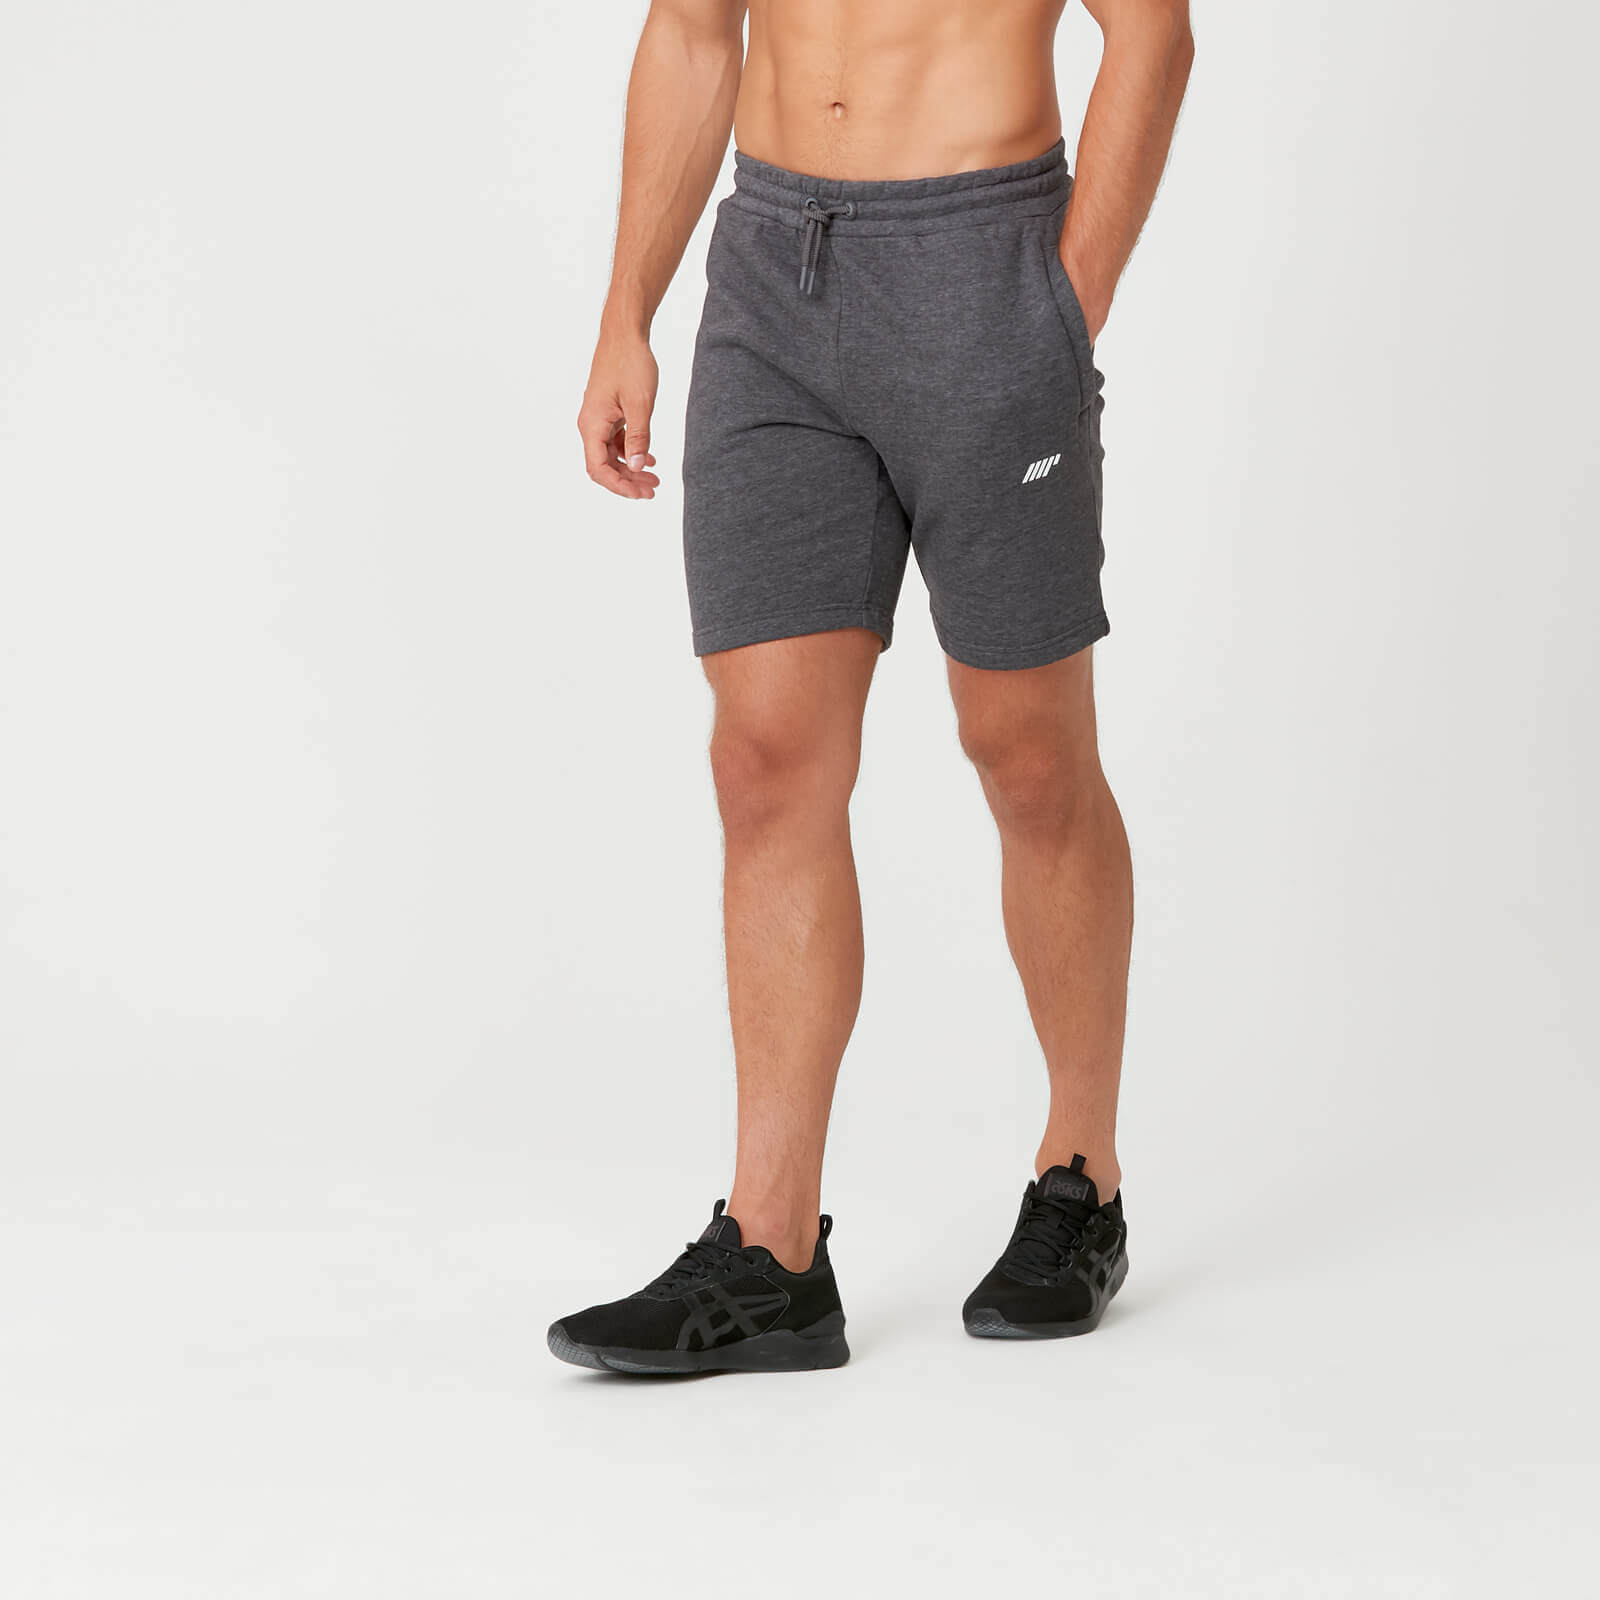 Tru-Fit Sweat Shorts - Charcoal Marl